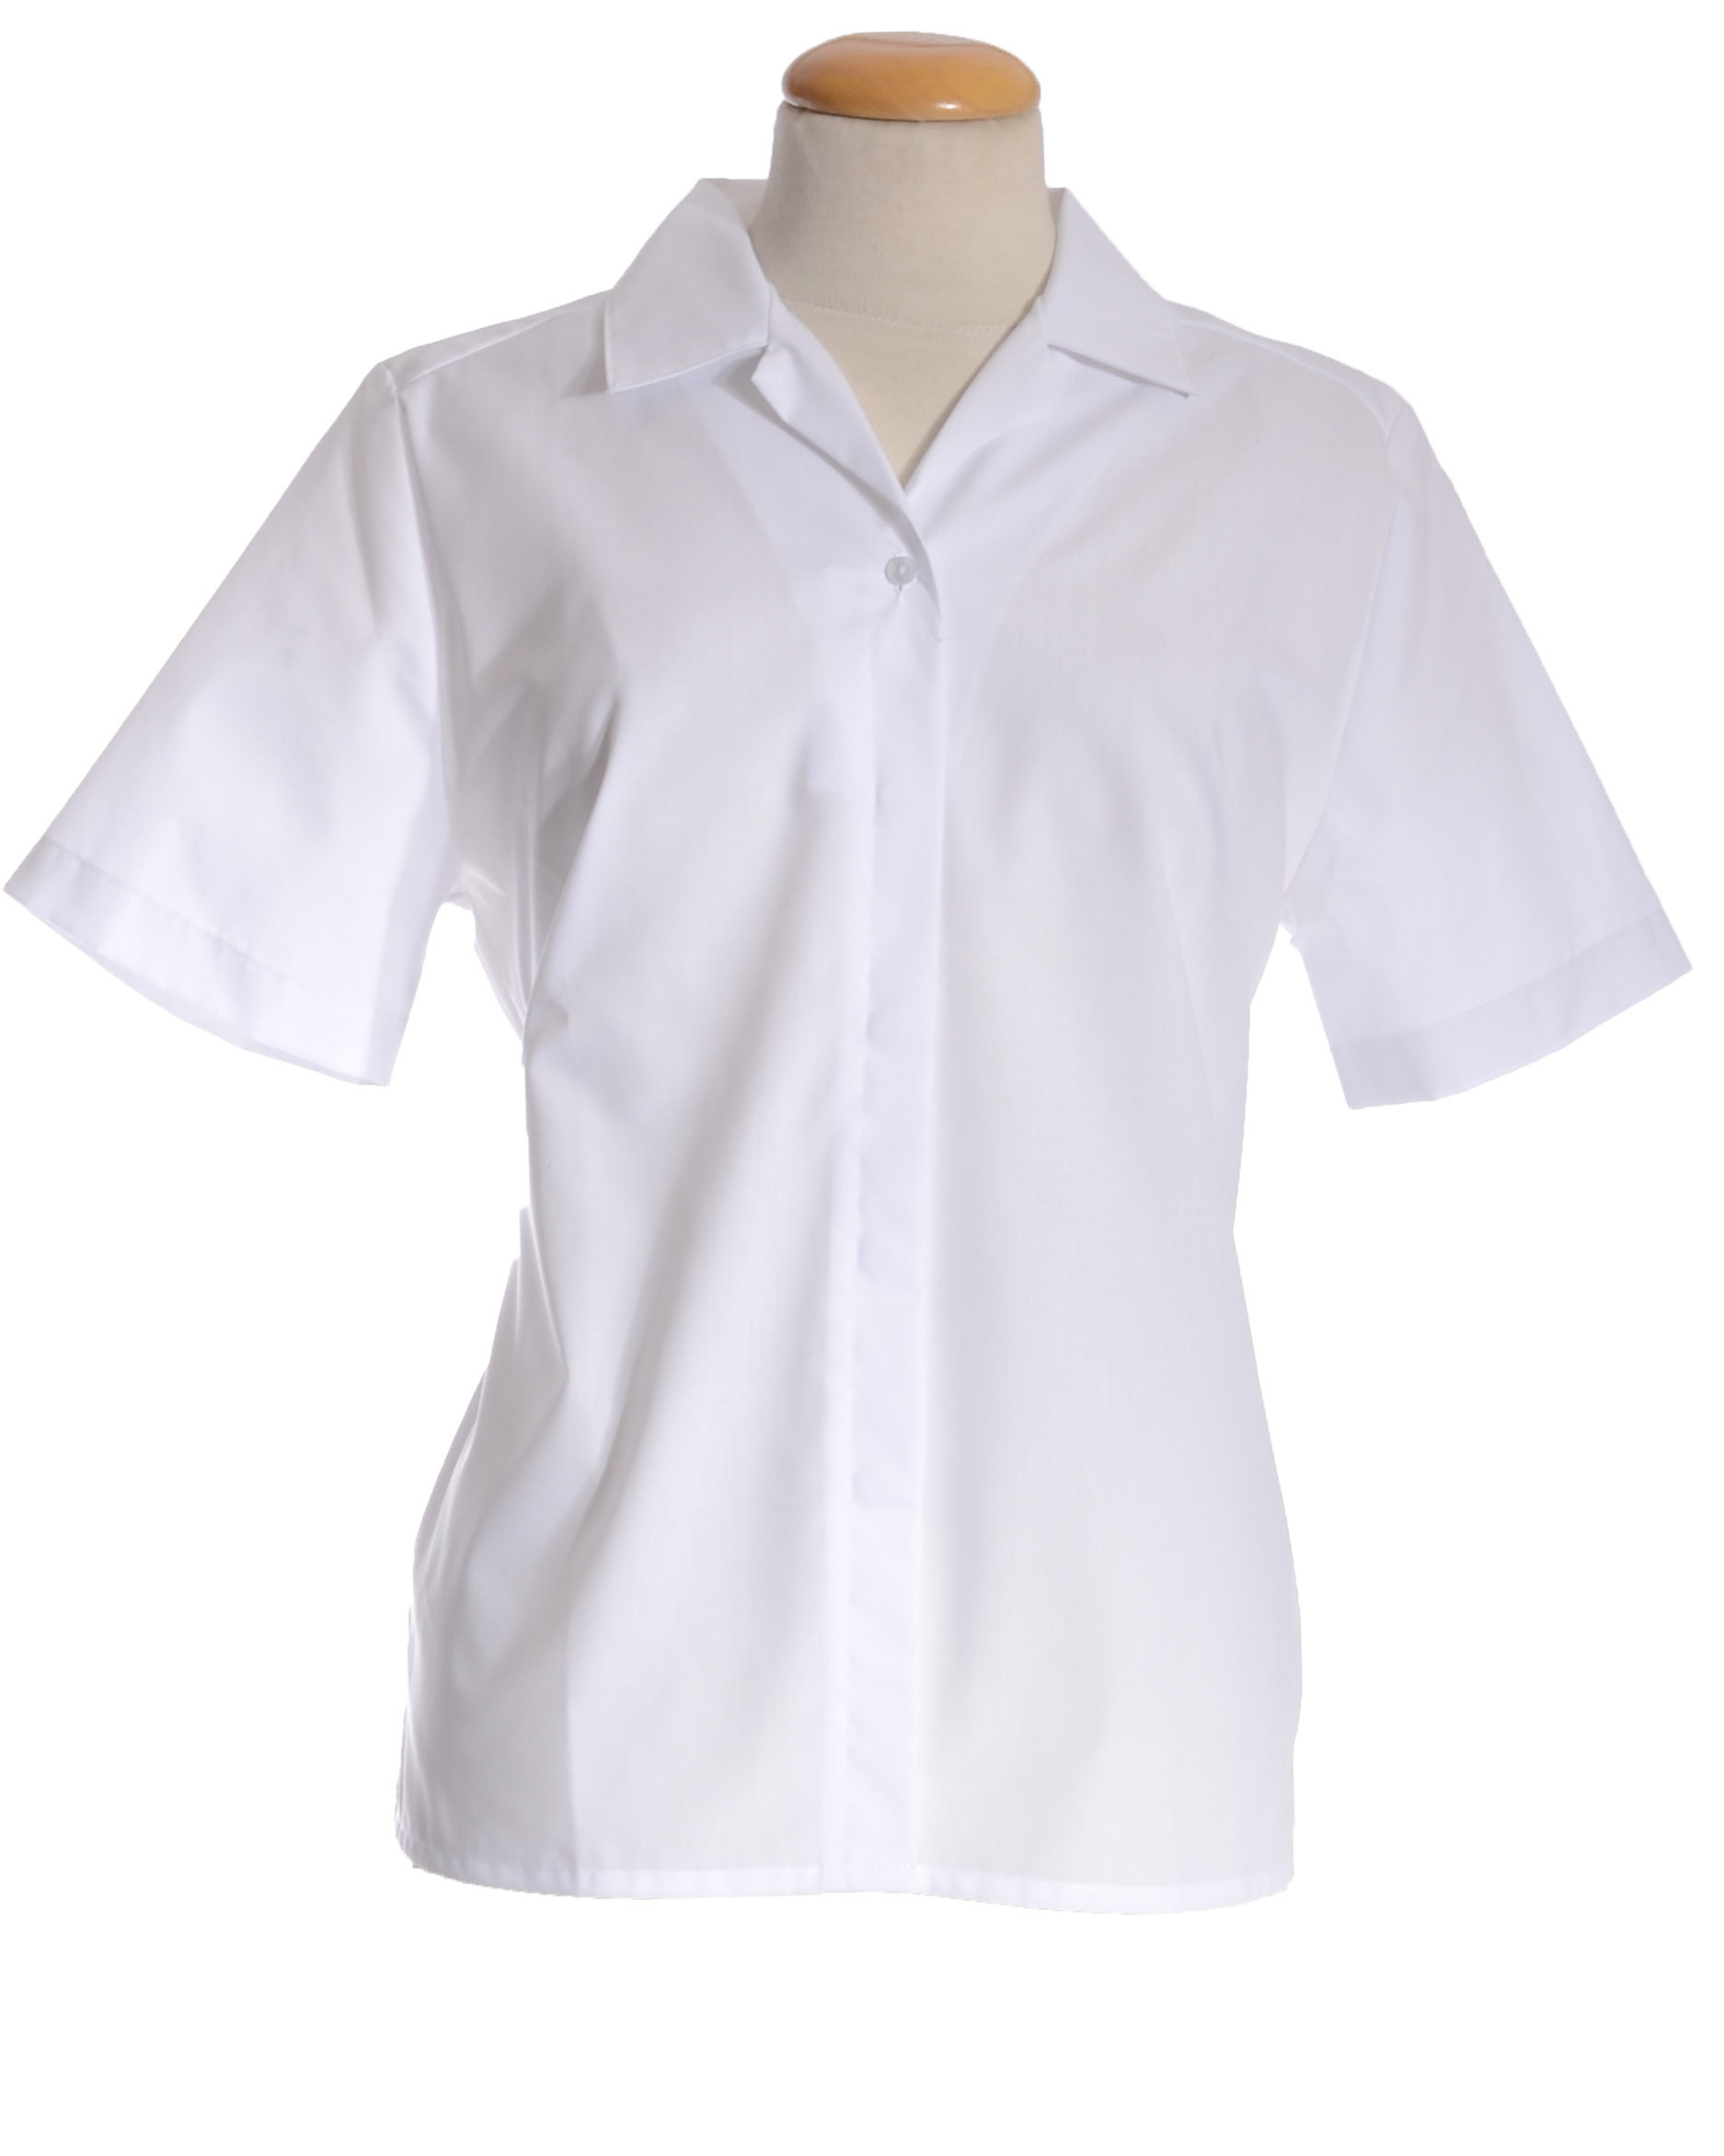 Ladies White Short Sleeve Blouse | Short Sleeve Blouses |Order ...